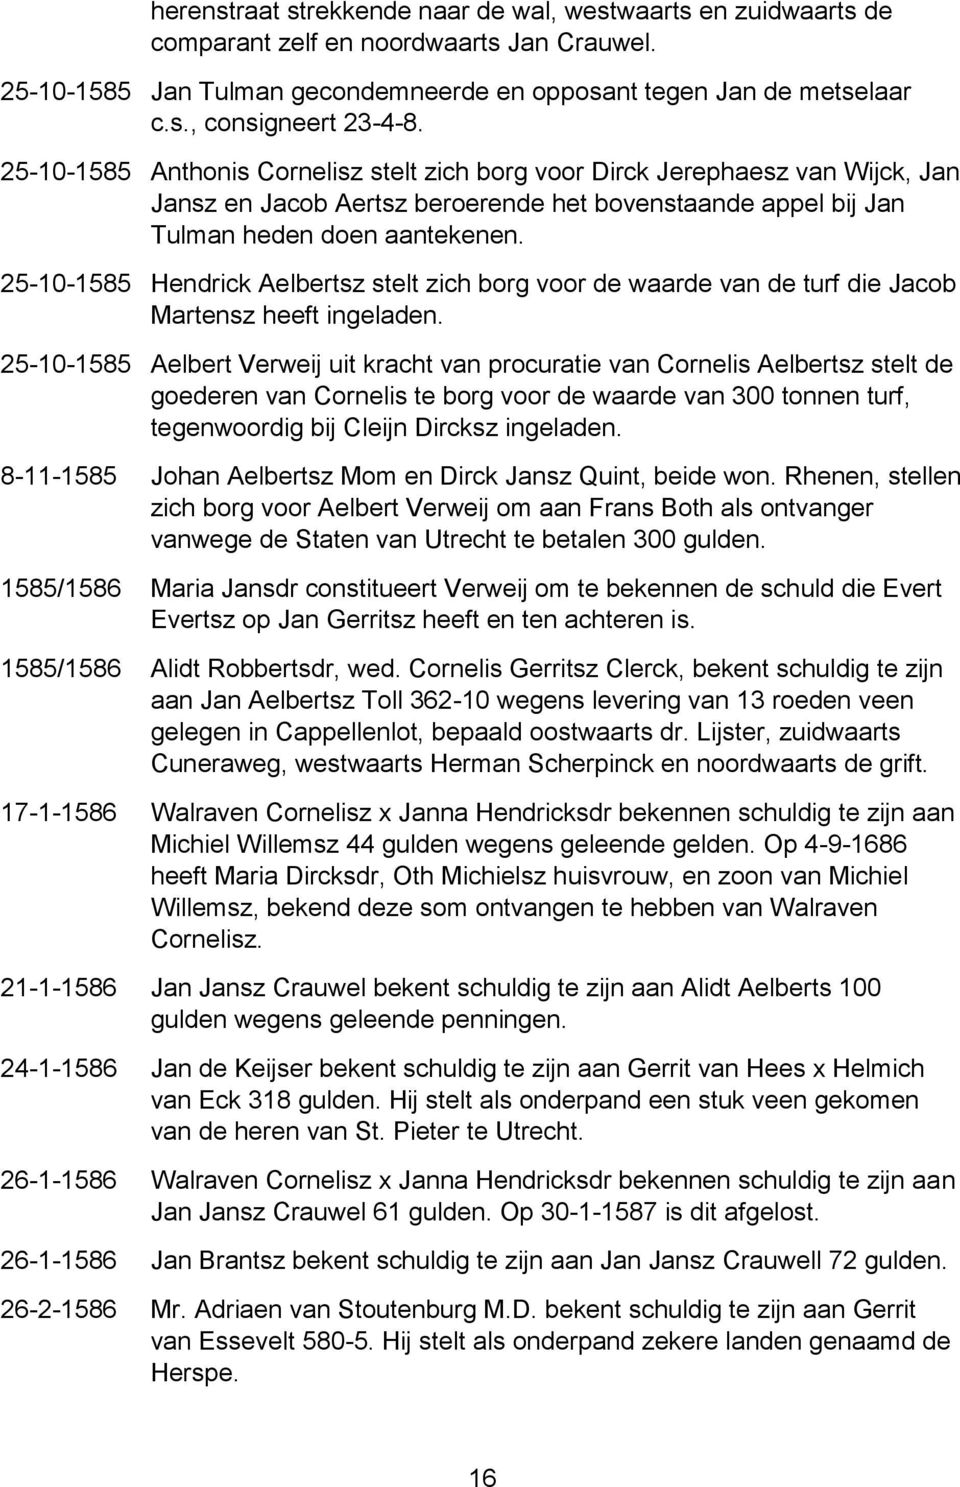 25-10-1585 Hendrick Aelbertsz stelt zich borg voor de waarde van de turf die Jacob Martensz heeft ingeladen.